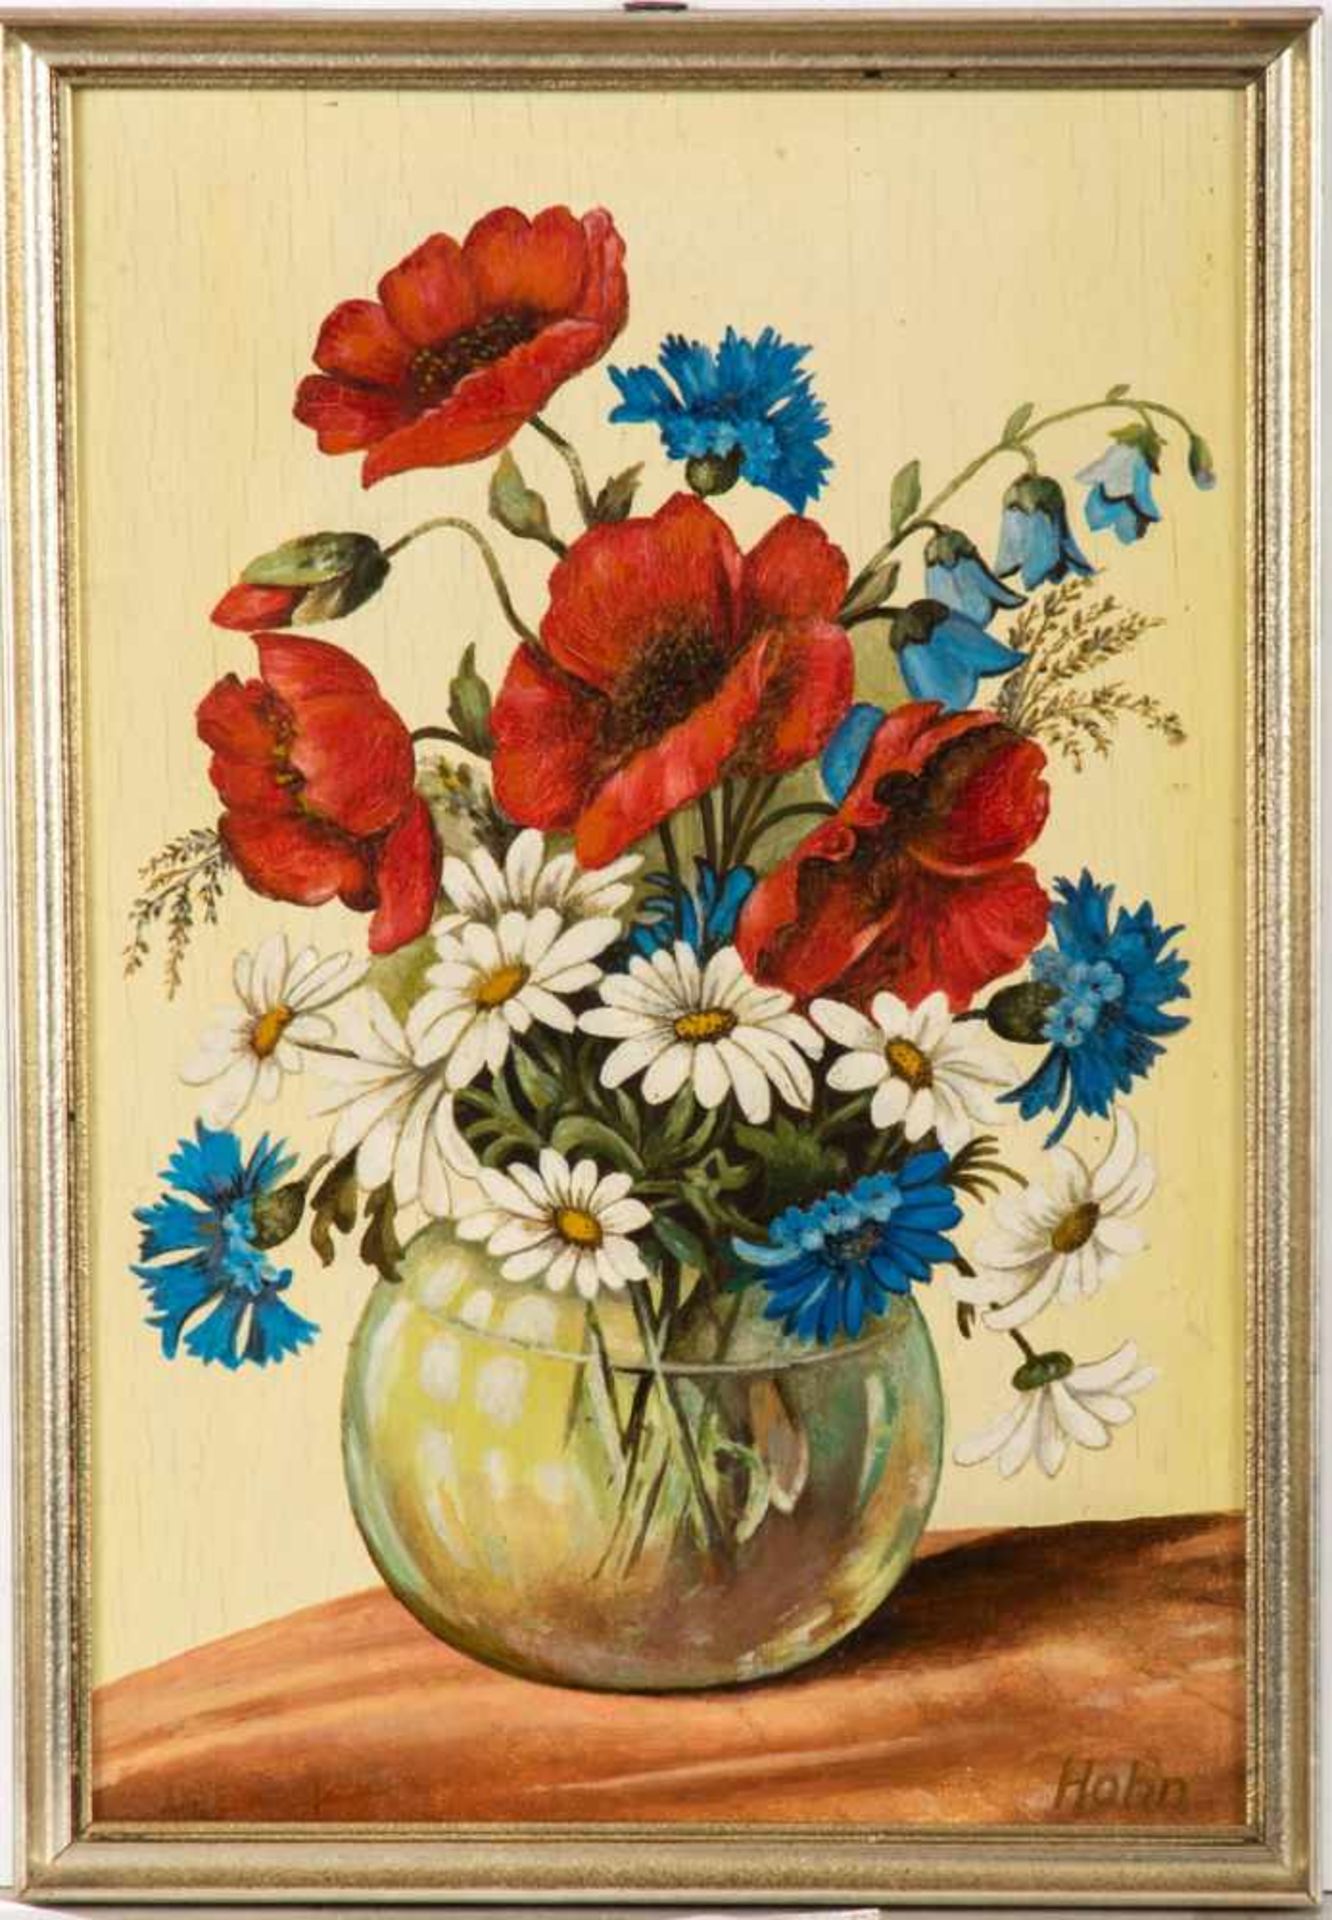 Hohn, Blumenmaler 20. Jh.Stilleben mit Feldblumen. Öl/Holz. Re.u.sign. 37 x 25 cm.R.